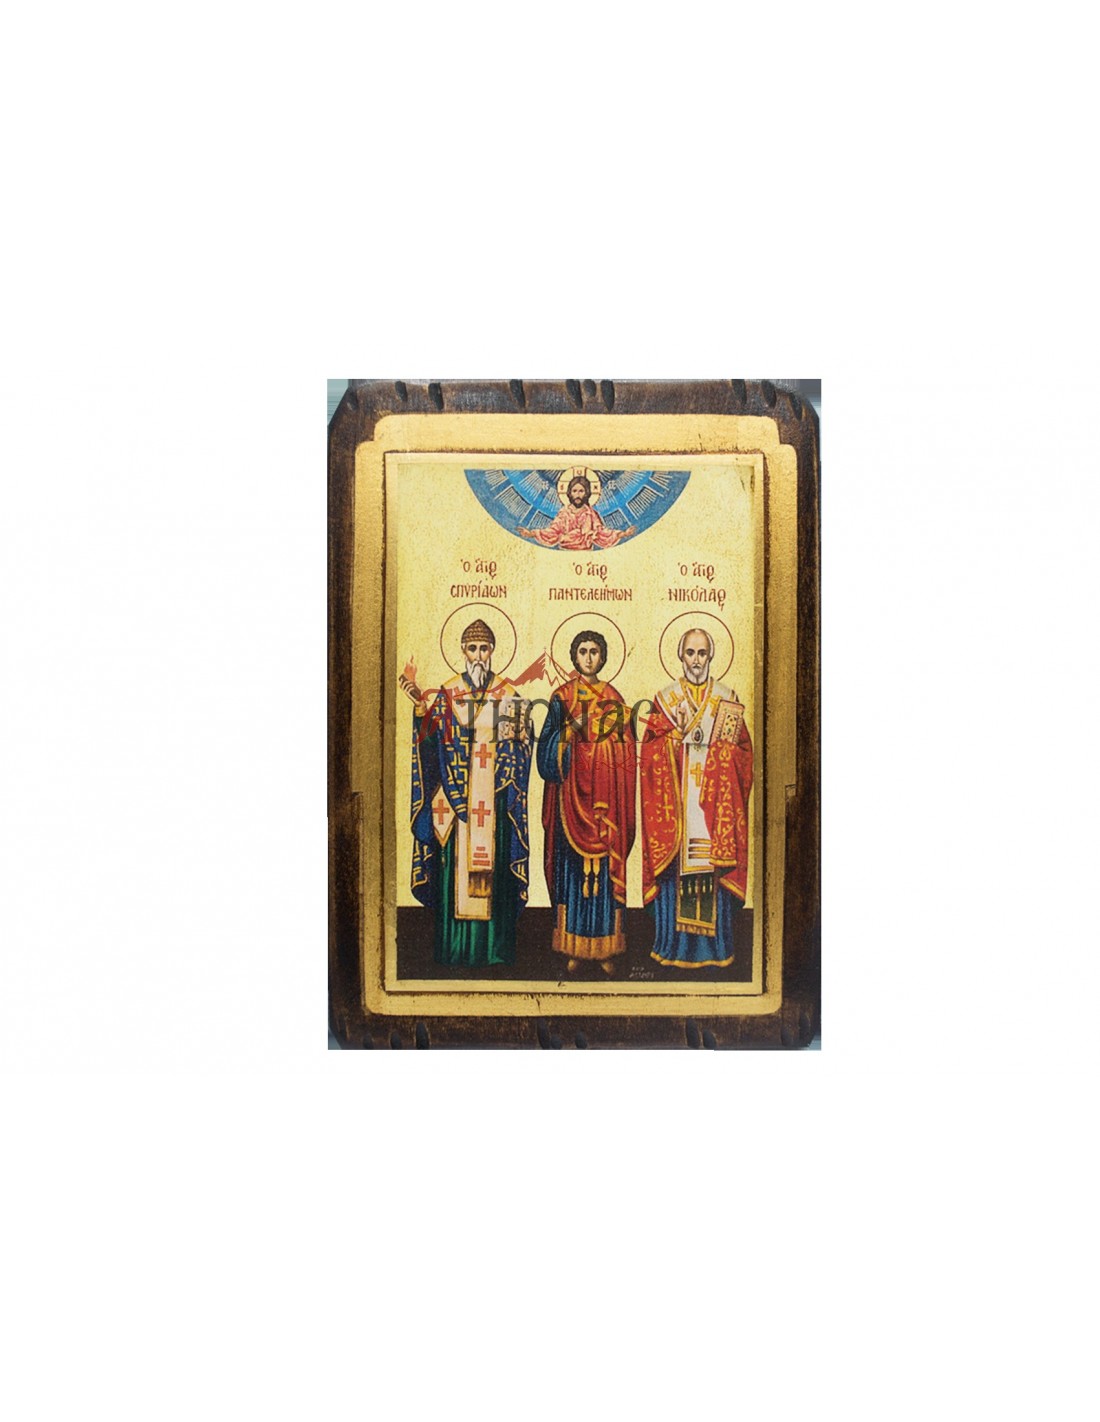 Святой Пантелеймон: целитель и чудотворец. Биография и история его жизни.